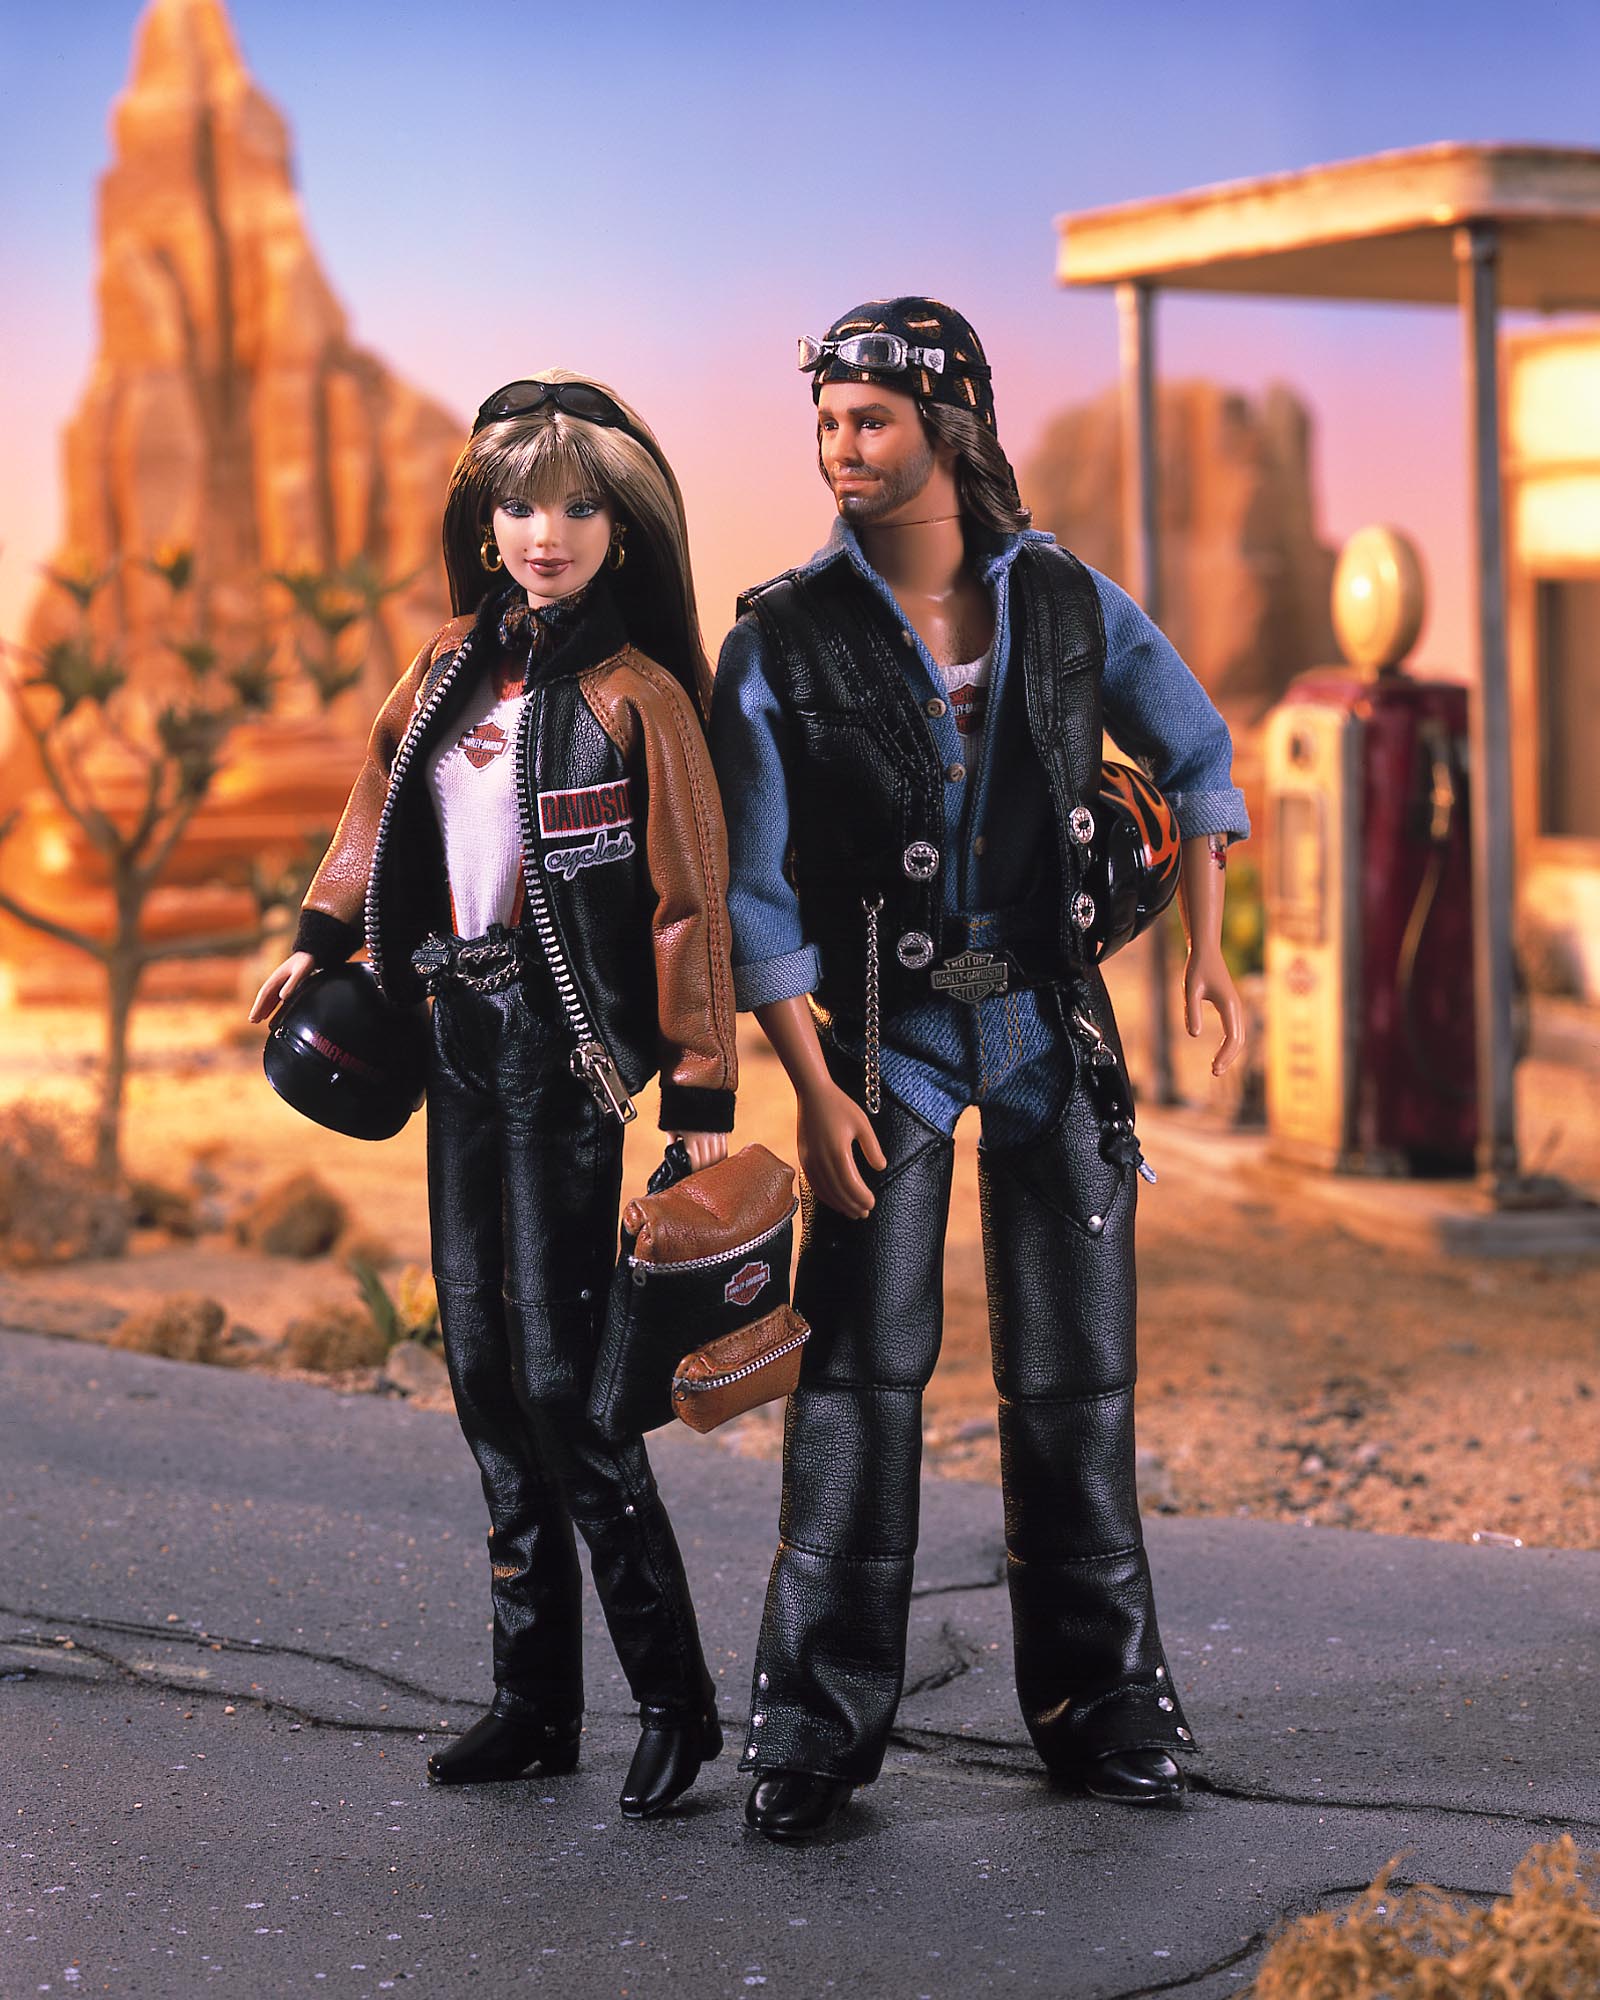 Harley Davidson Barbie and Ken Dolls